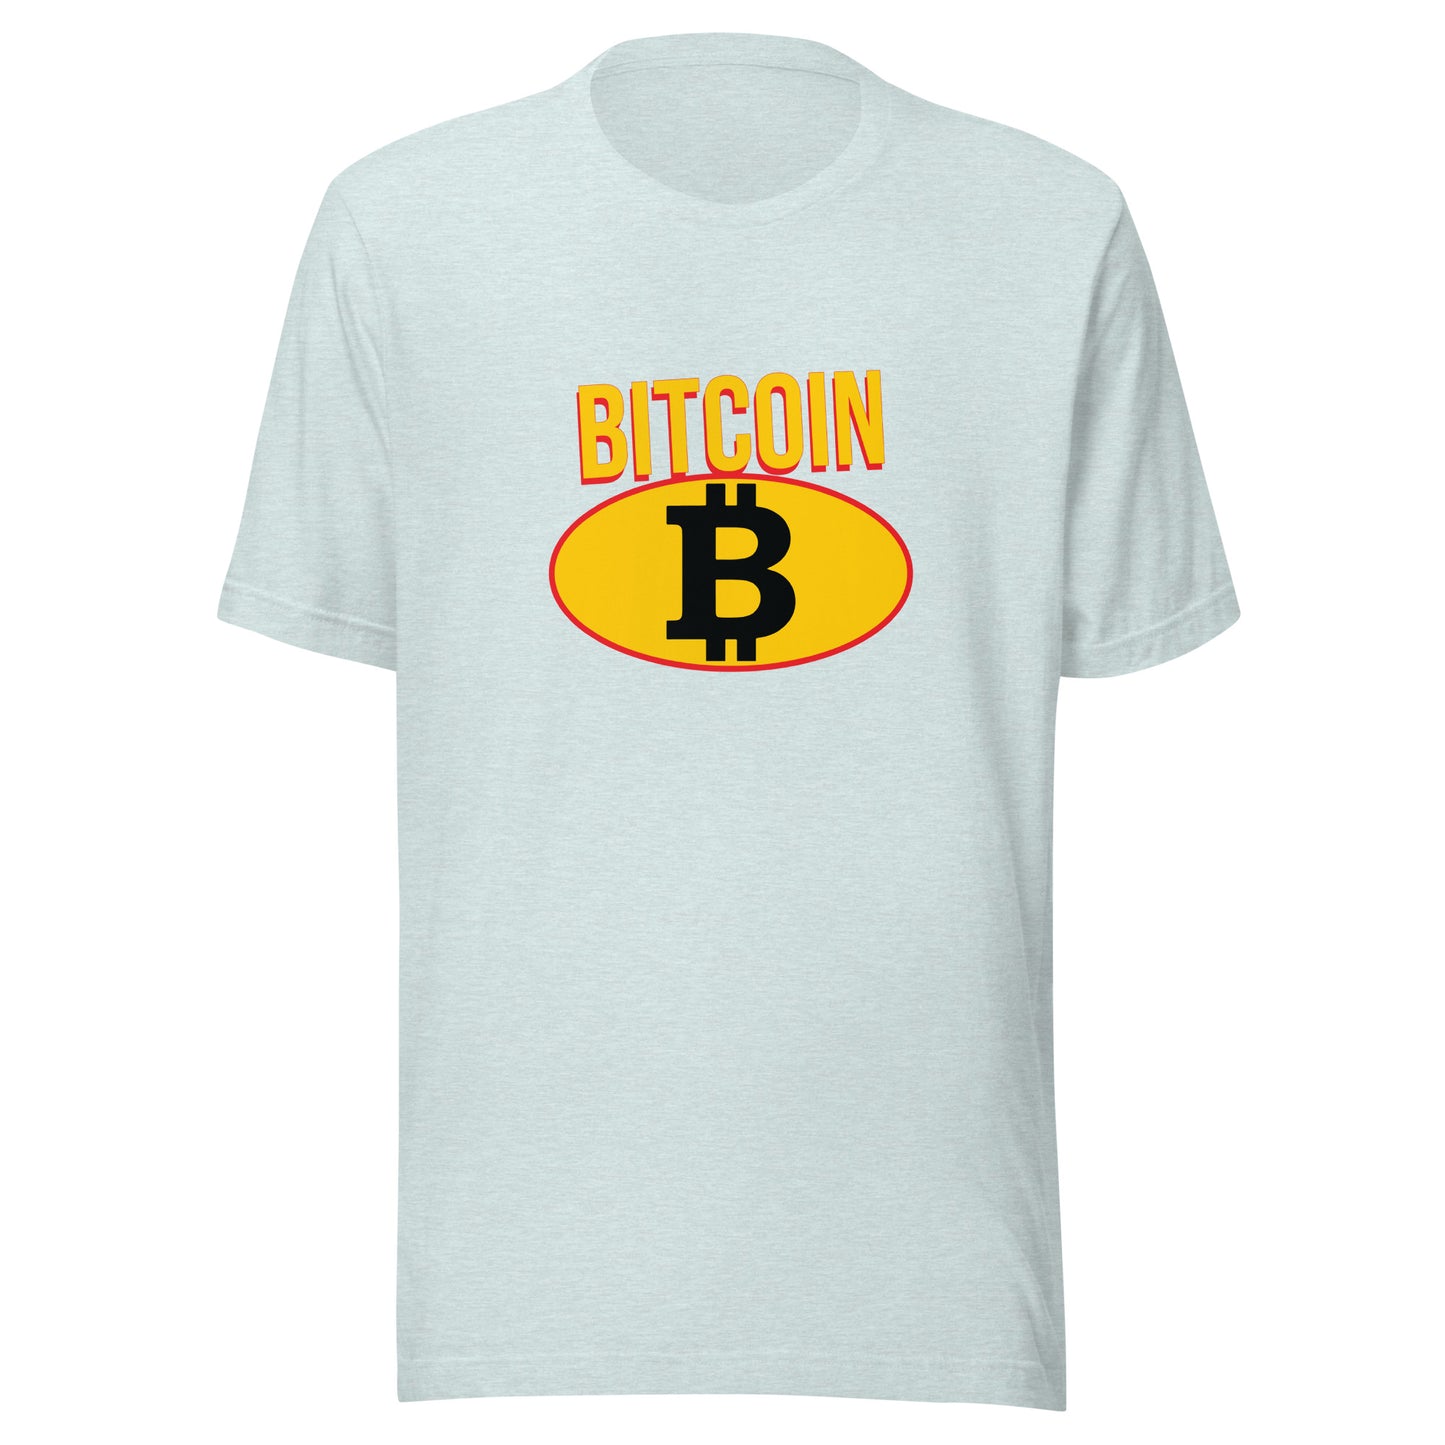 Bitcoin B